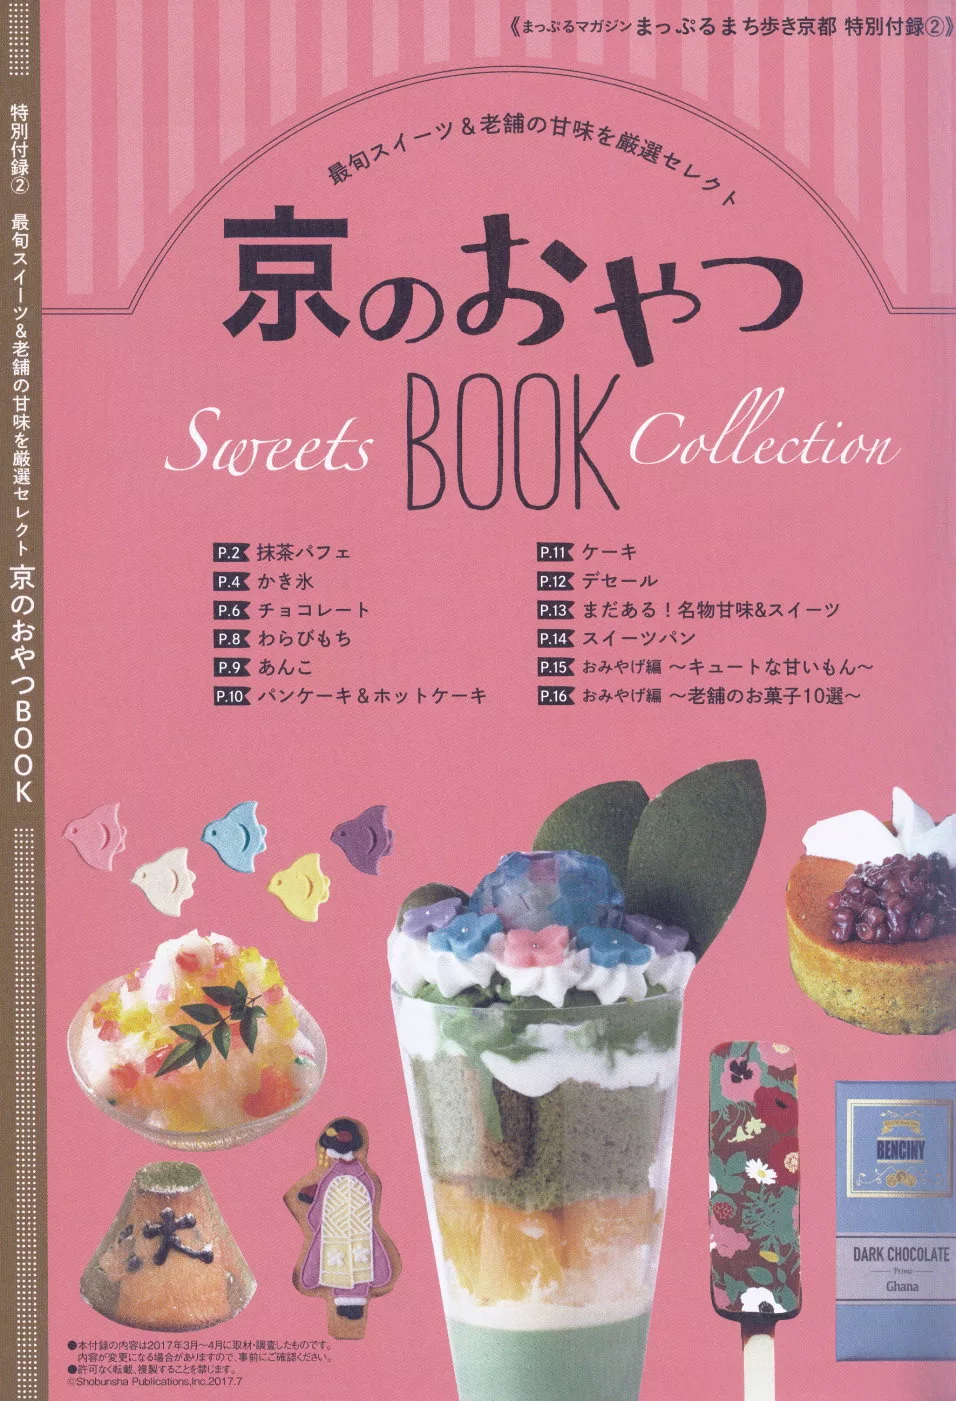 【特別附錄】京都甜點導覽書